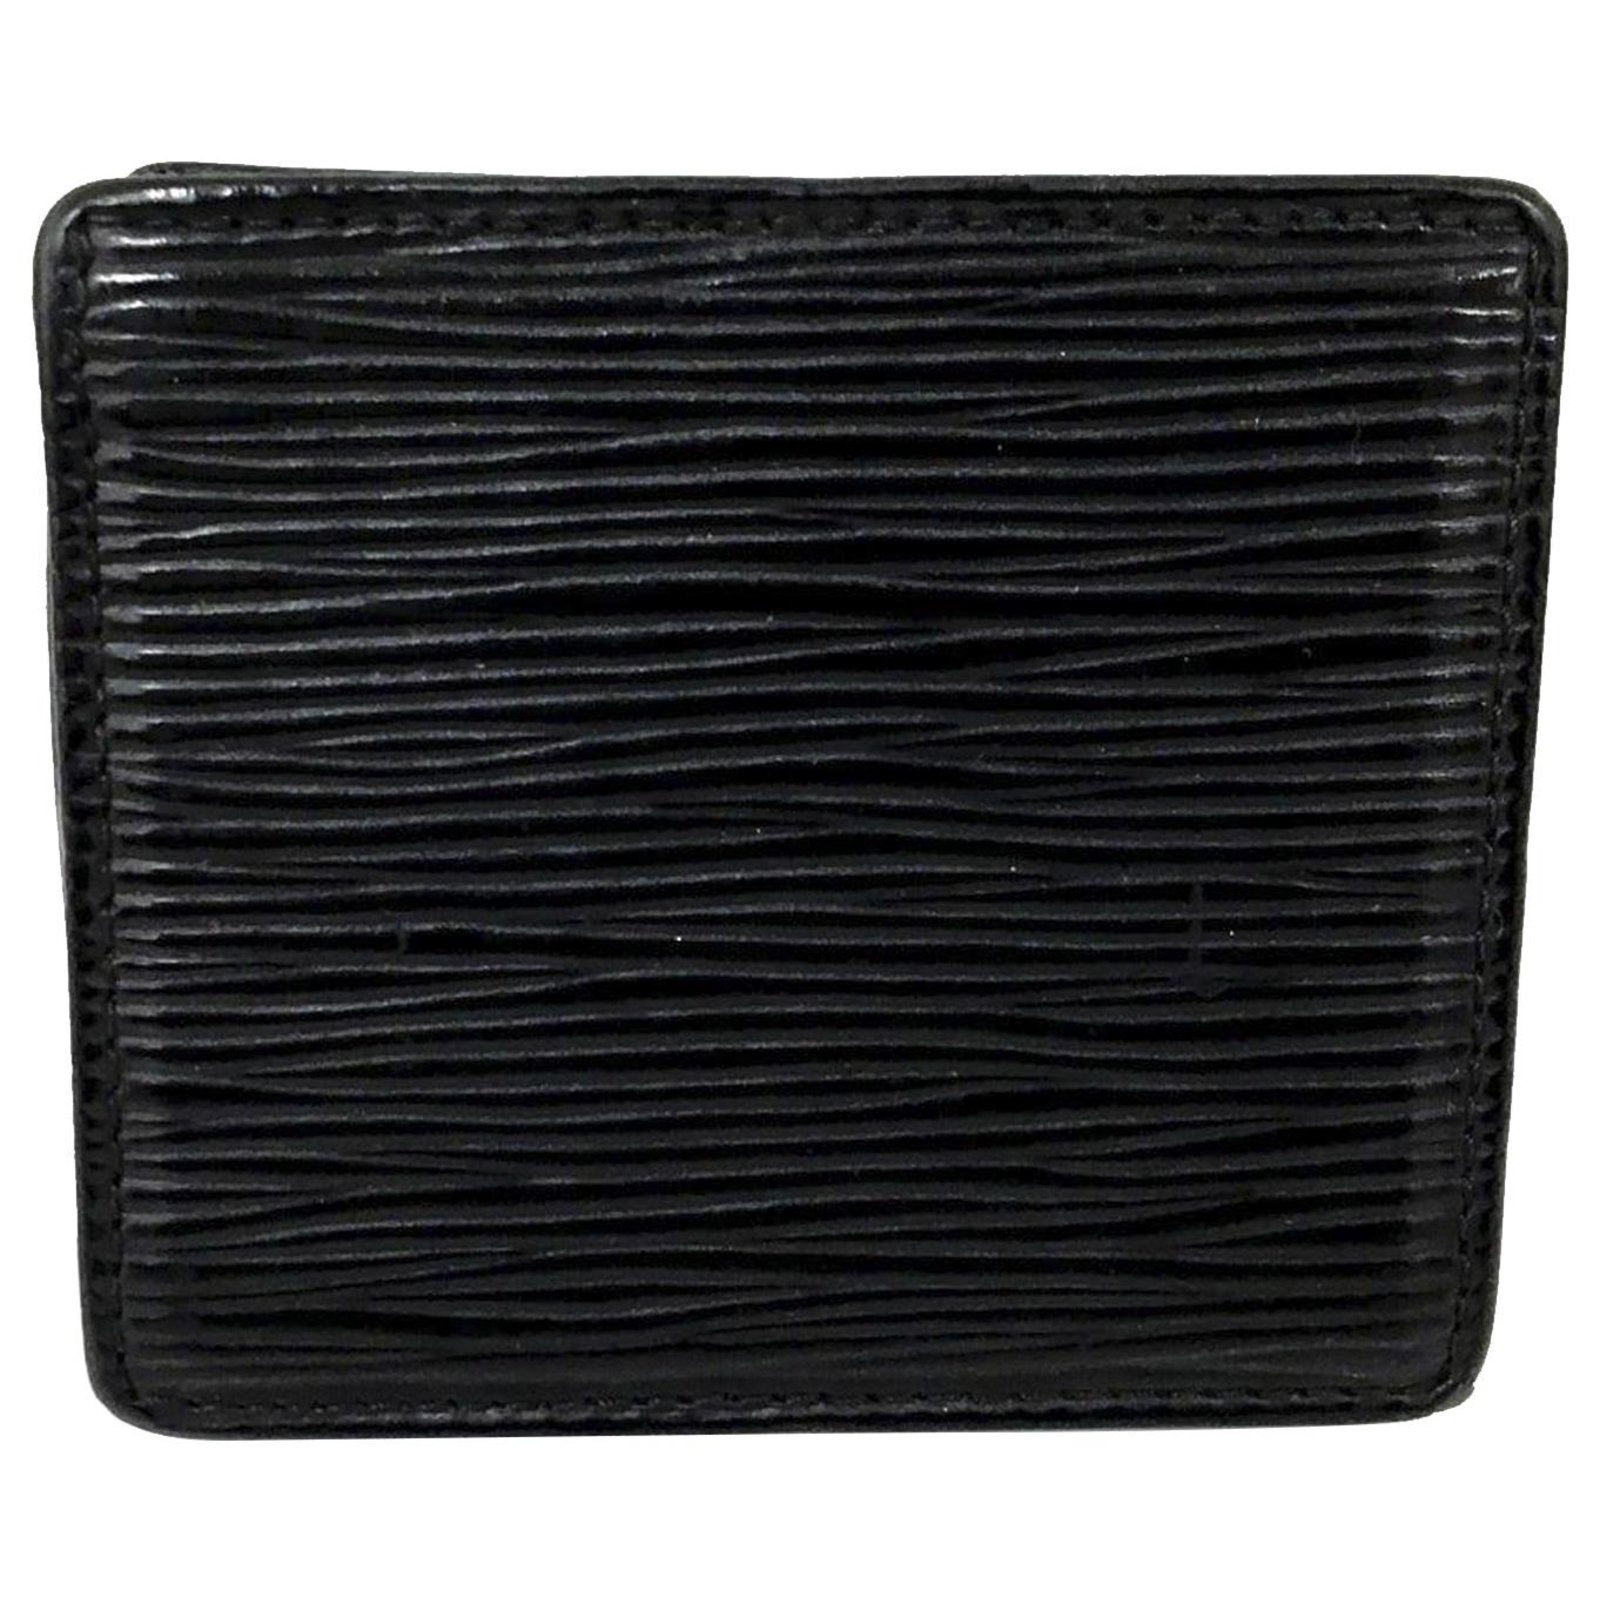 Louis Vuitton * Portemonnaie * Black